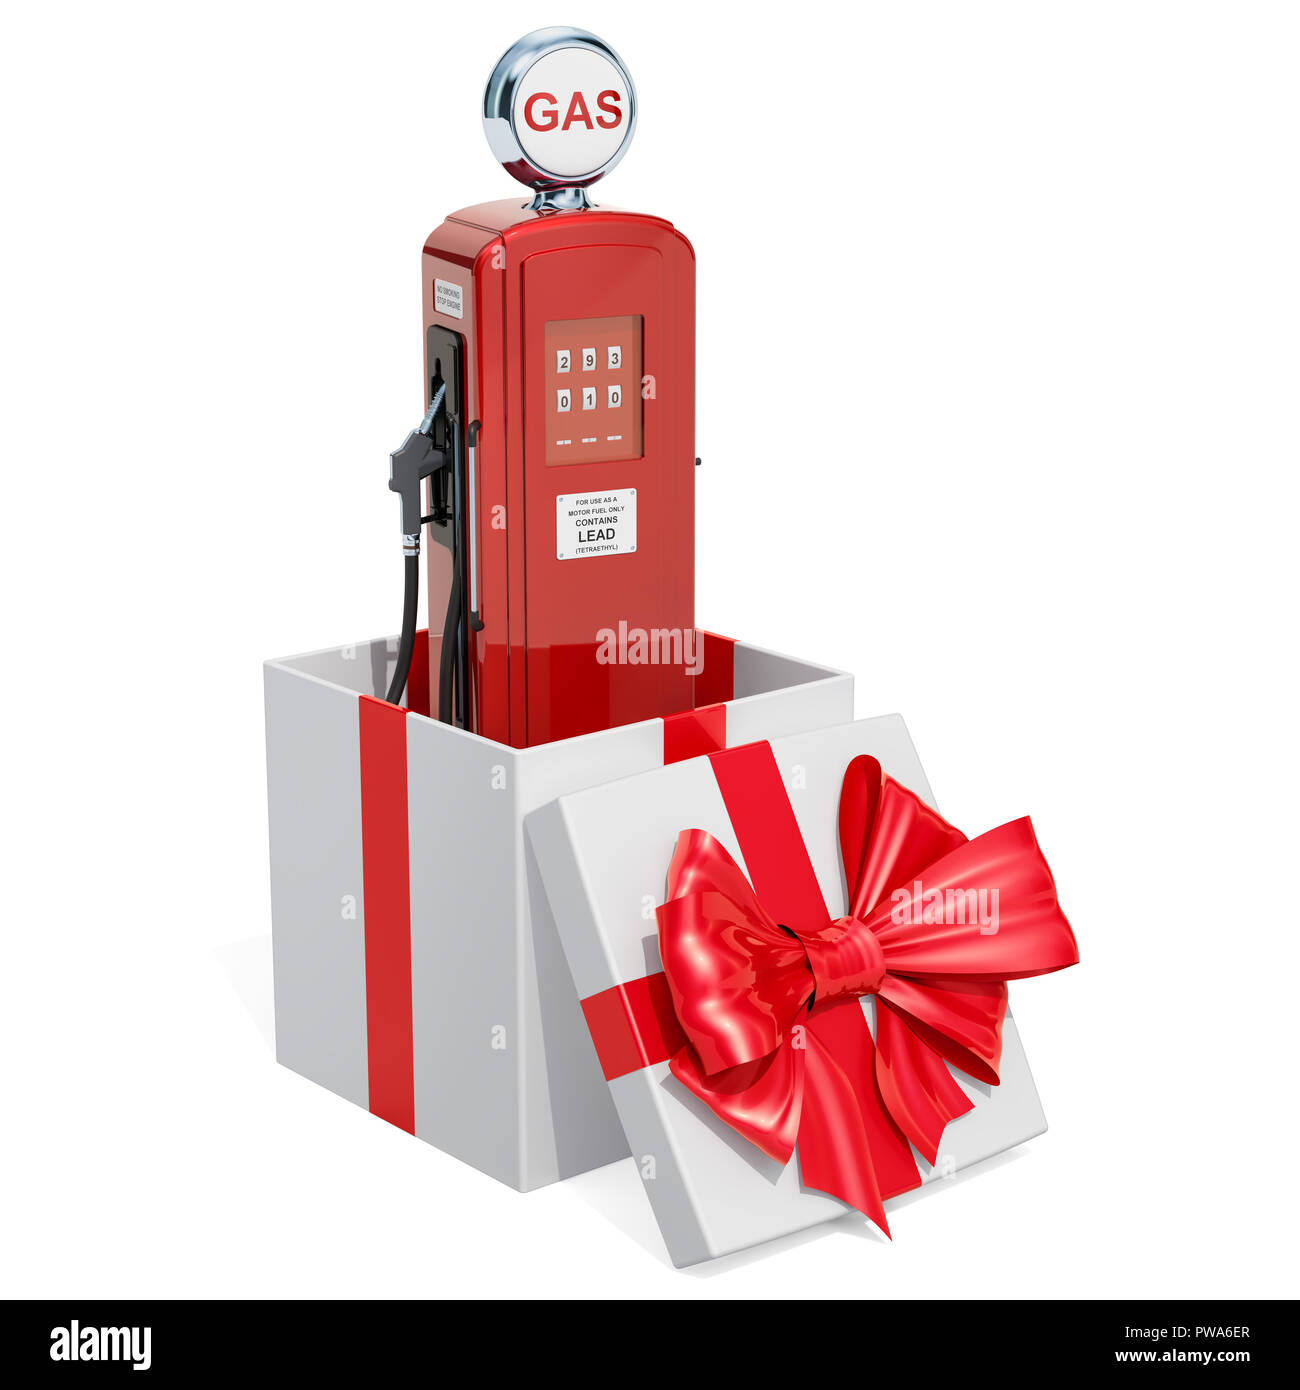 Gas-Pumpe, Geschenk, Geschenk, das Konzept. 3D-Rendering auf weißem Hintergrund Stockfoto